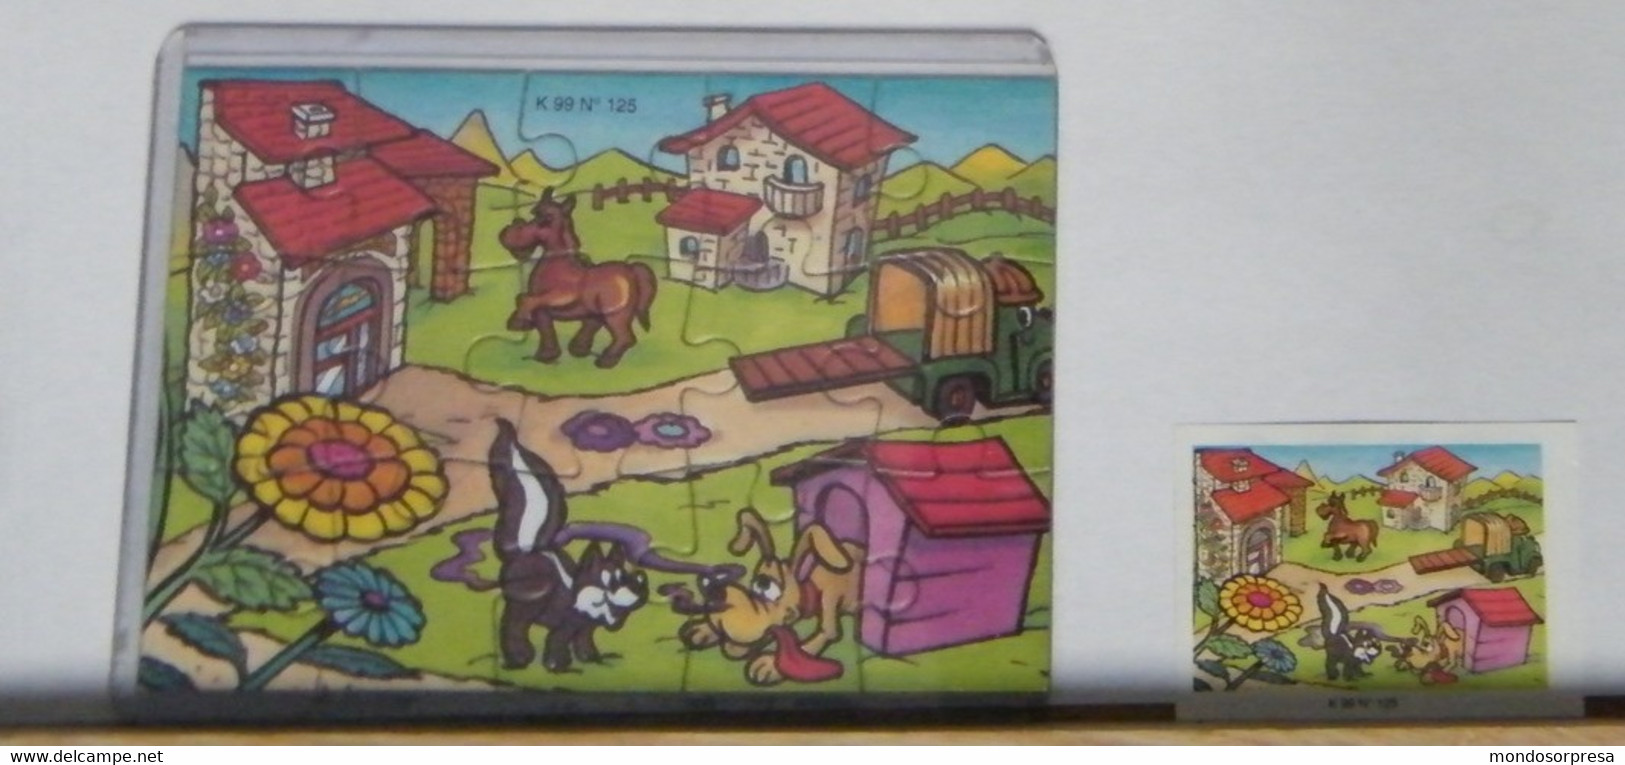 (SC09 -39) PUZZLE FERRERO, FIGURATIVO K 99 N° 125 + CARTINA - Puzzles